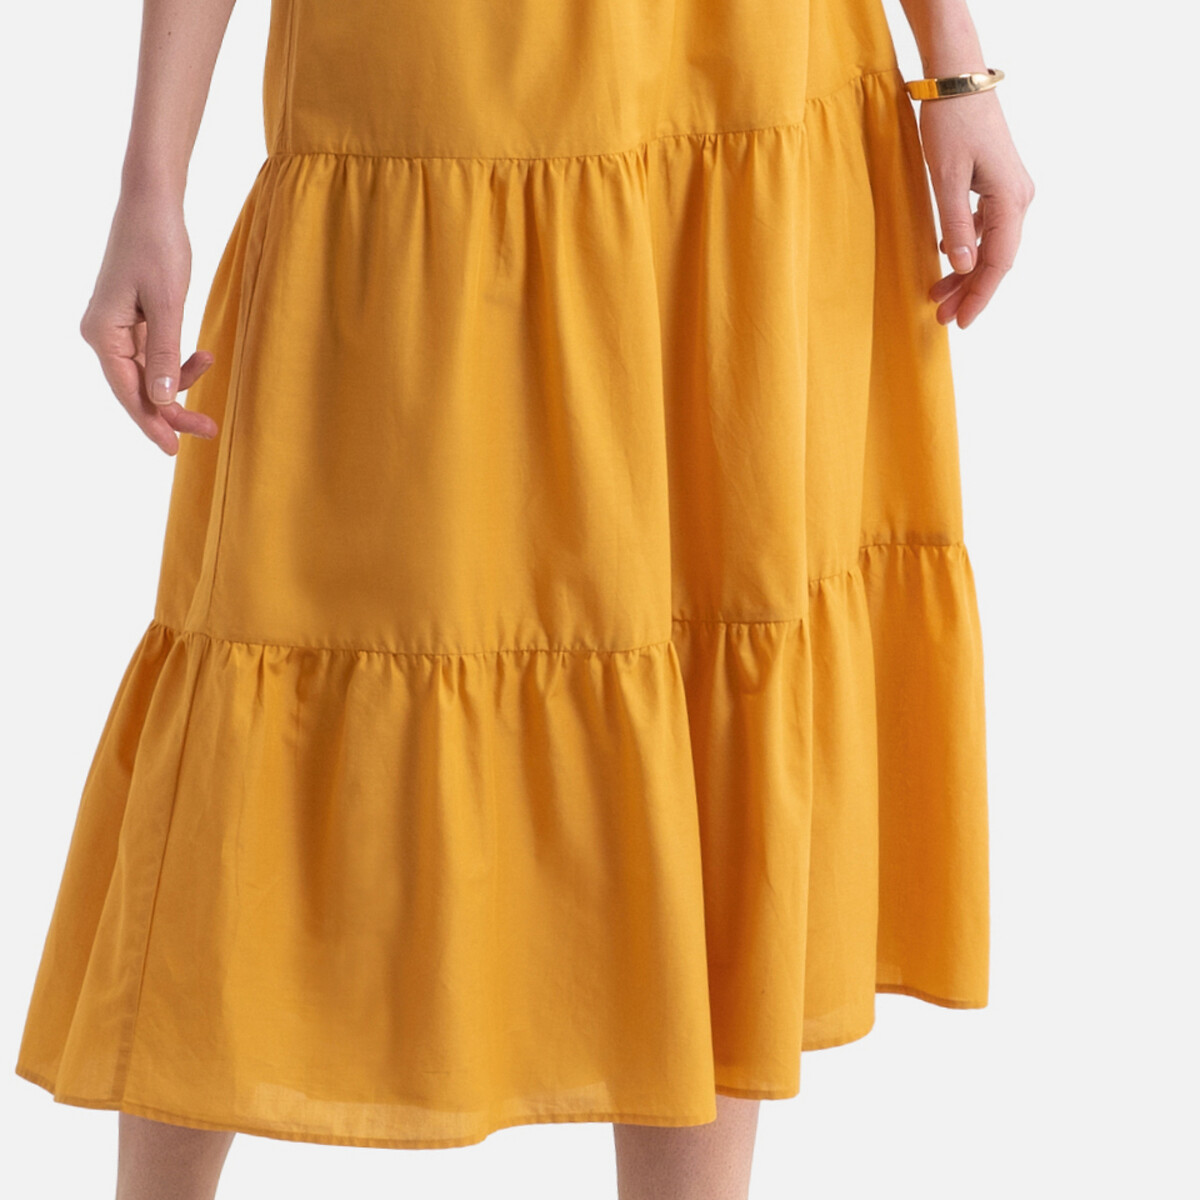 Платье LaRedoute Длинное расклешенное с короткими рукавами 36 (FR) - 42 (RUS) желтый, размер 36 (FR) - 42 (RUS) Длинное расклешенное с короткими рукавами 36 (FR) - 42 (RUS) желтый - фото 3